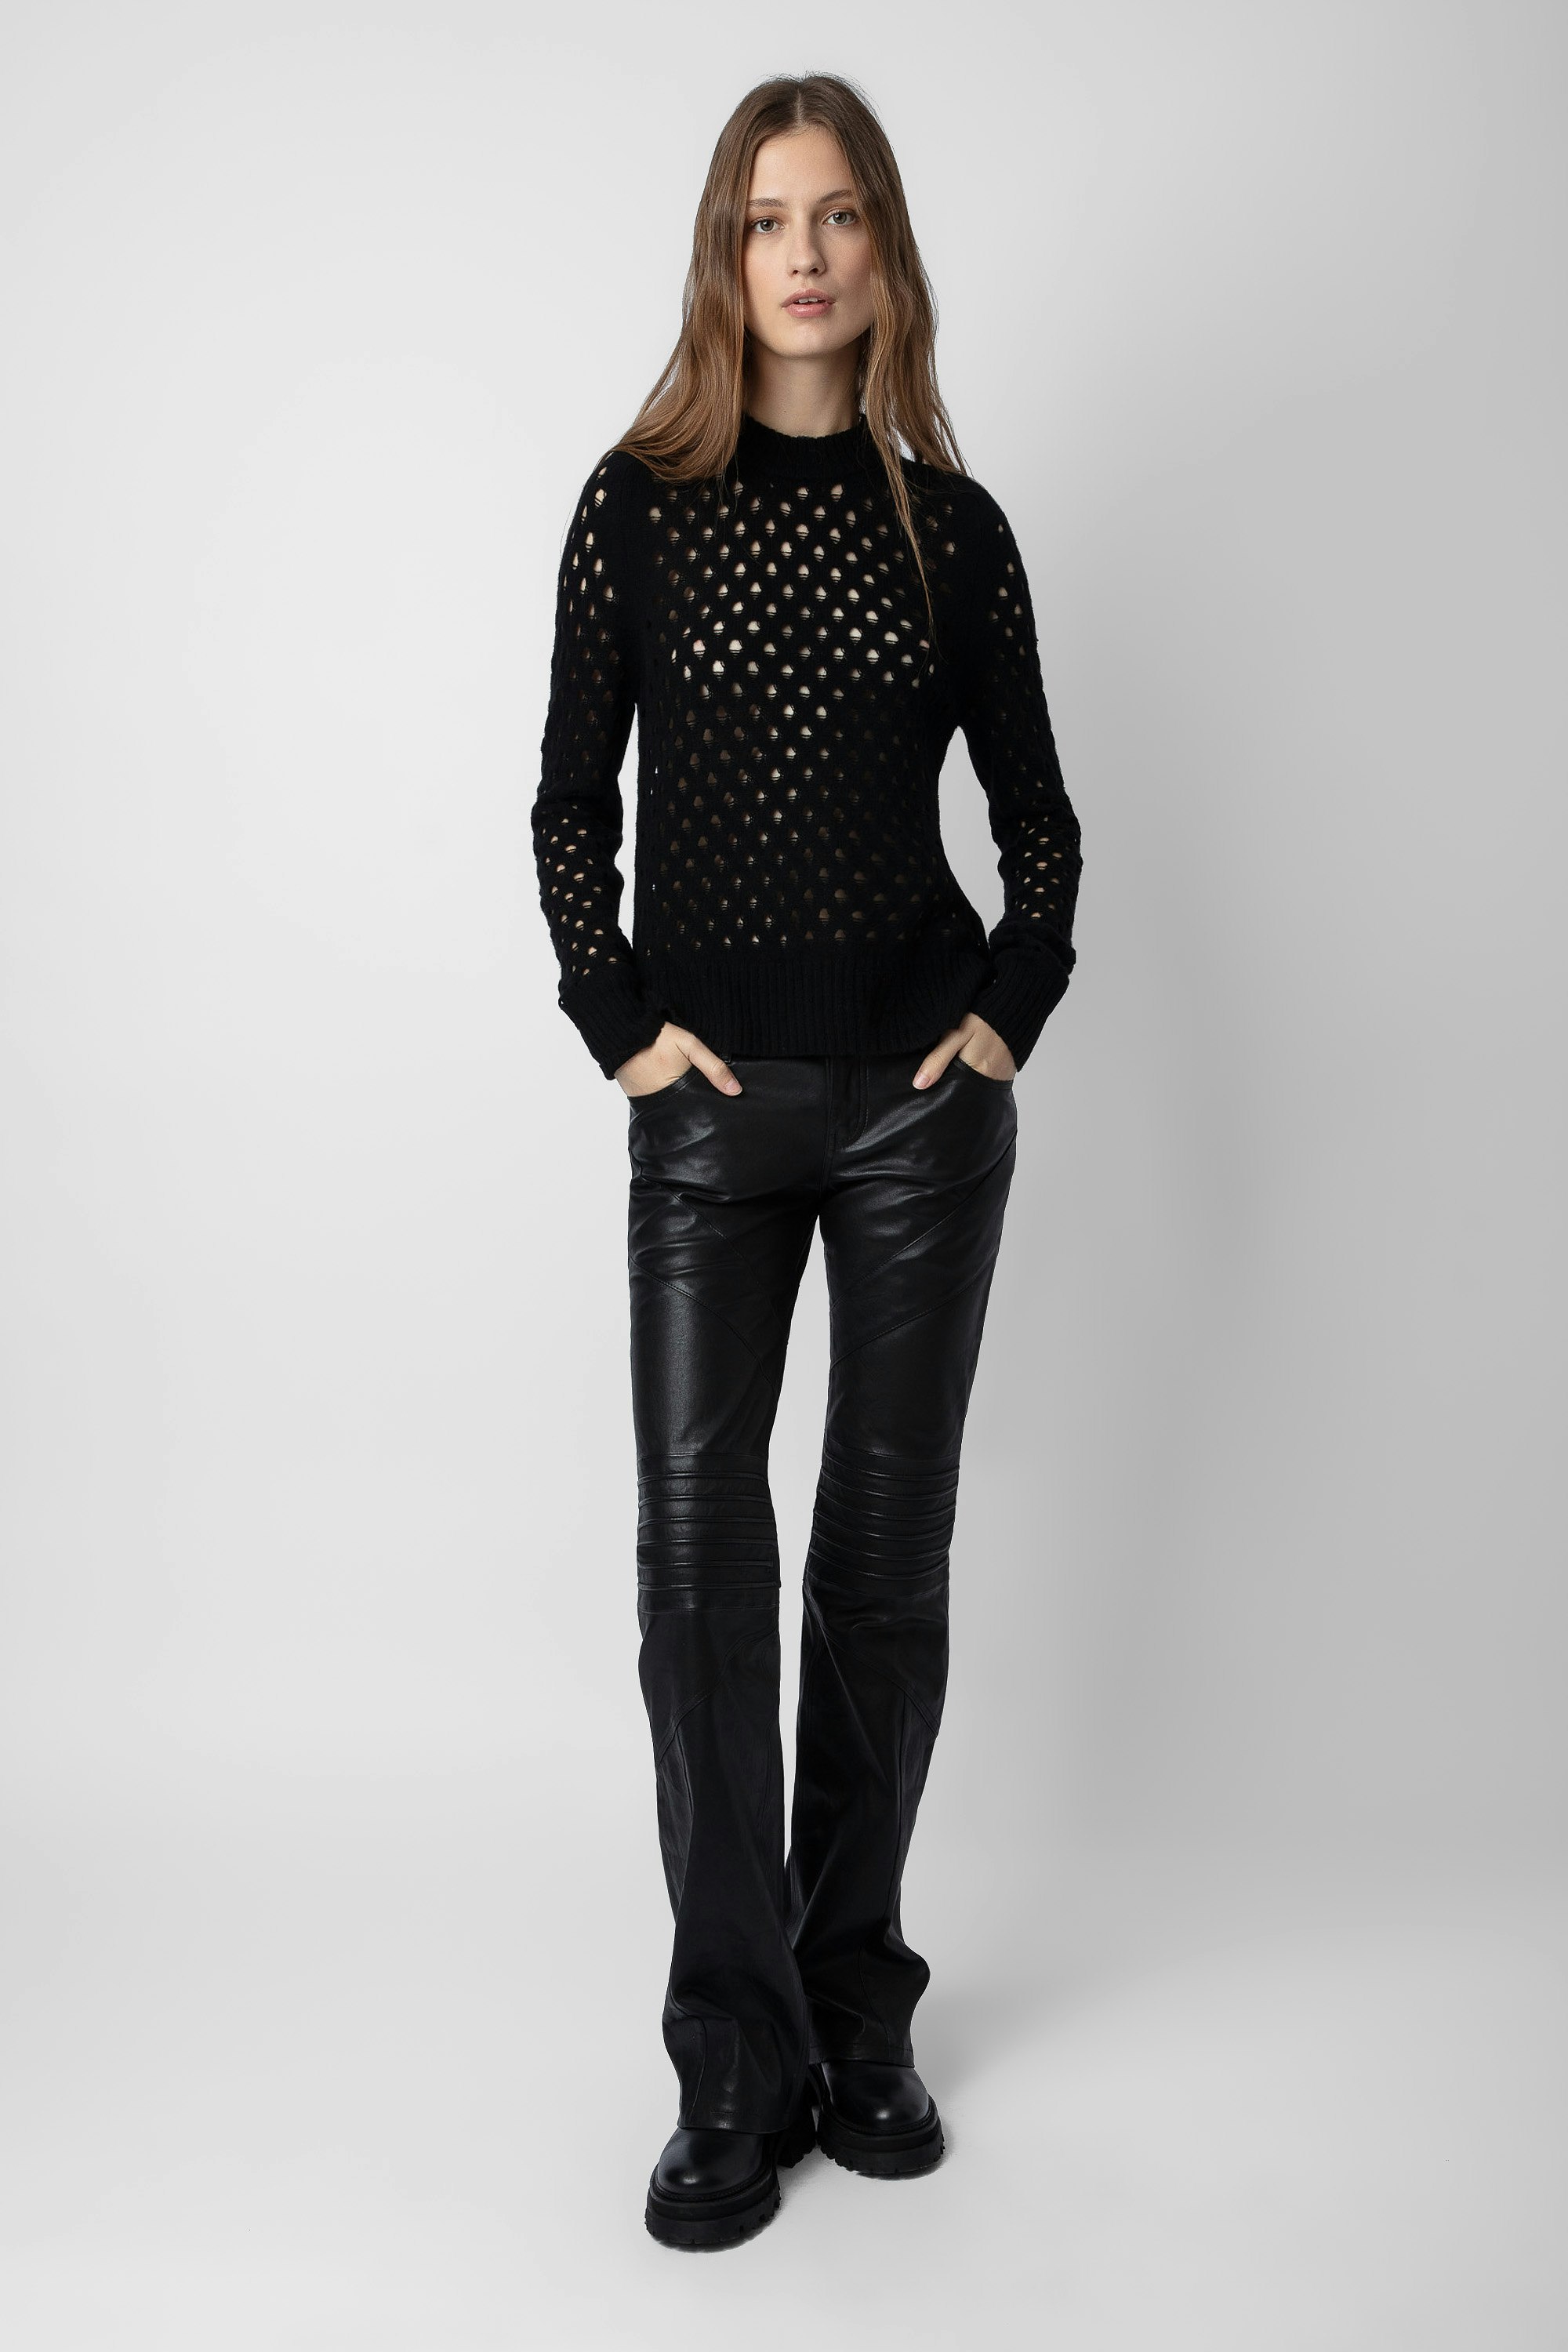 Pantalón Paulin Piel - Pantalón negro de piel con detalles pespunteados para mujer.